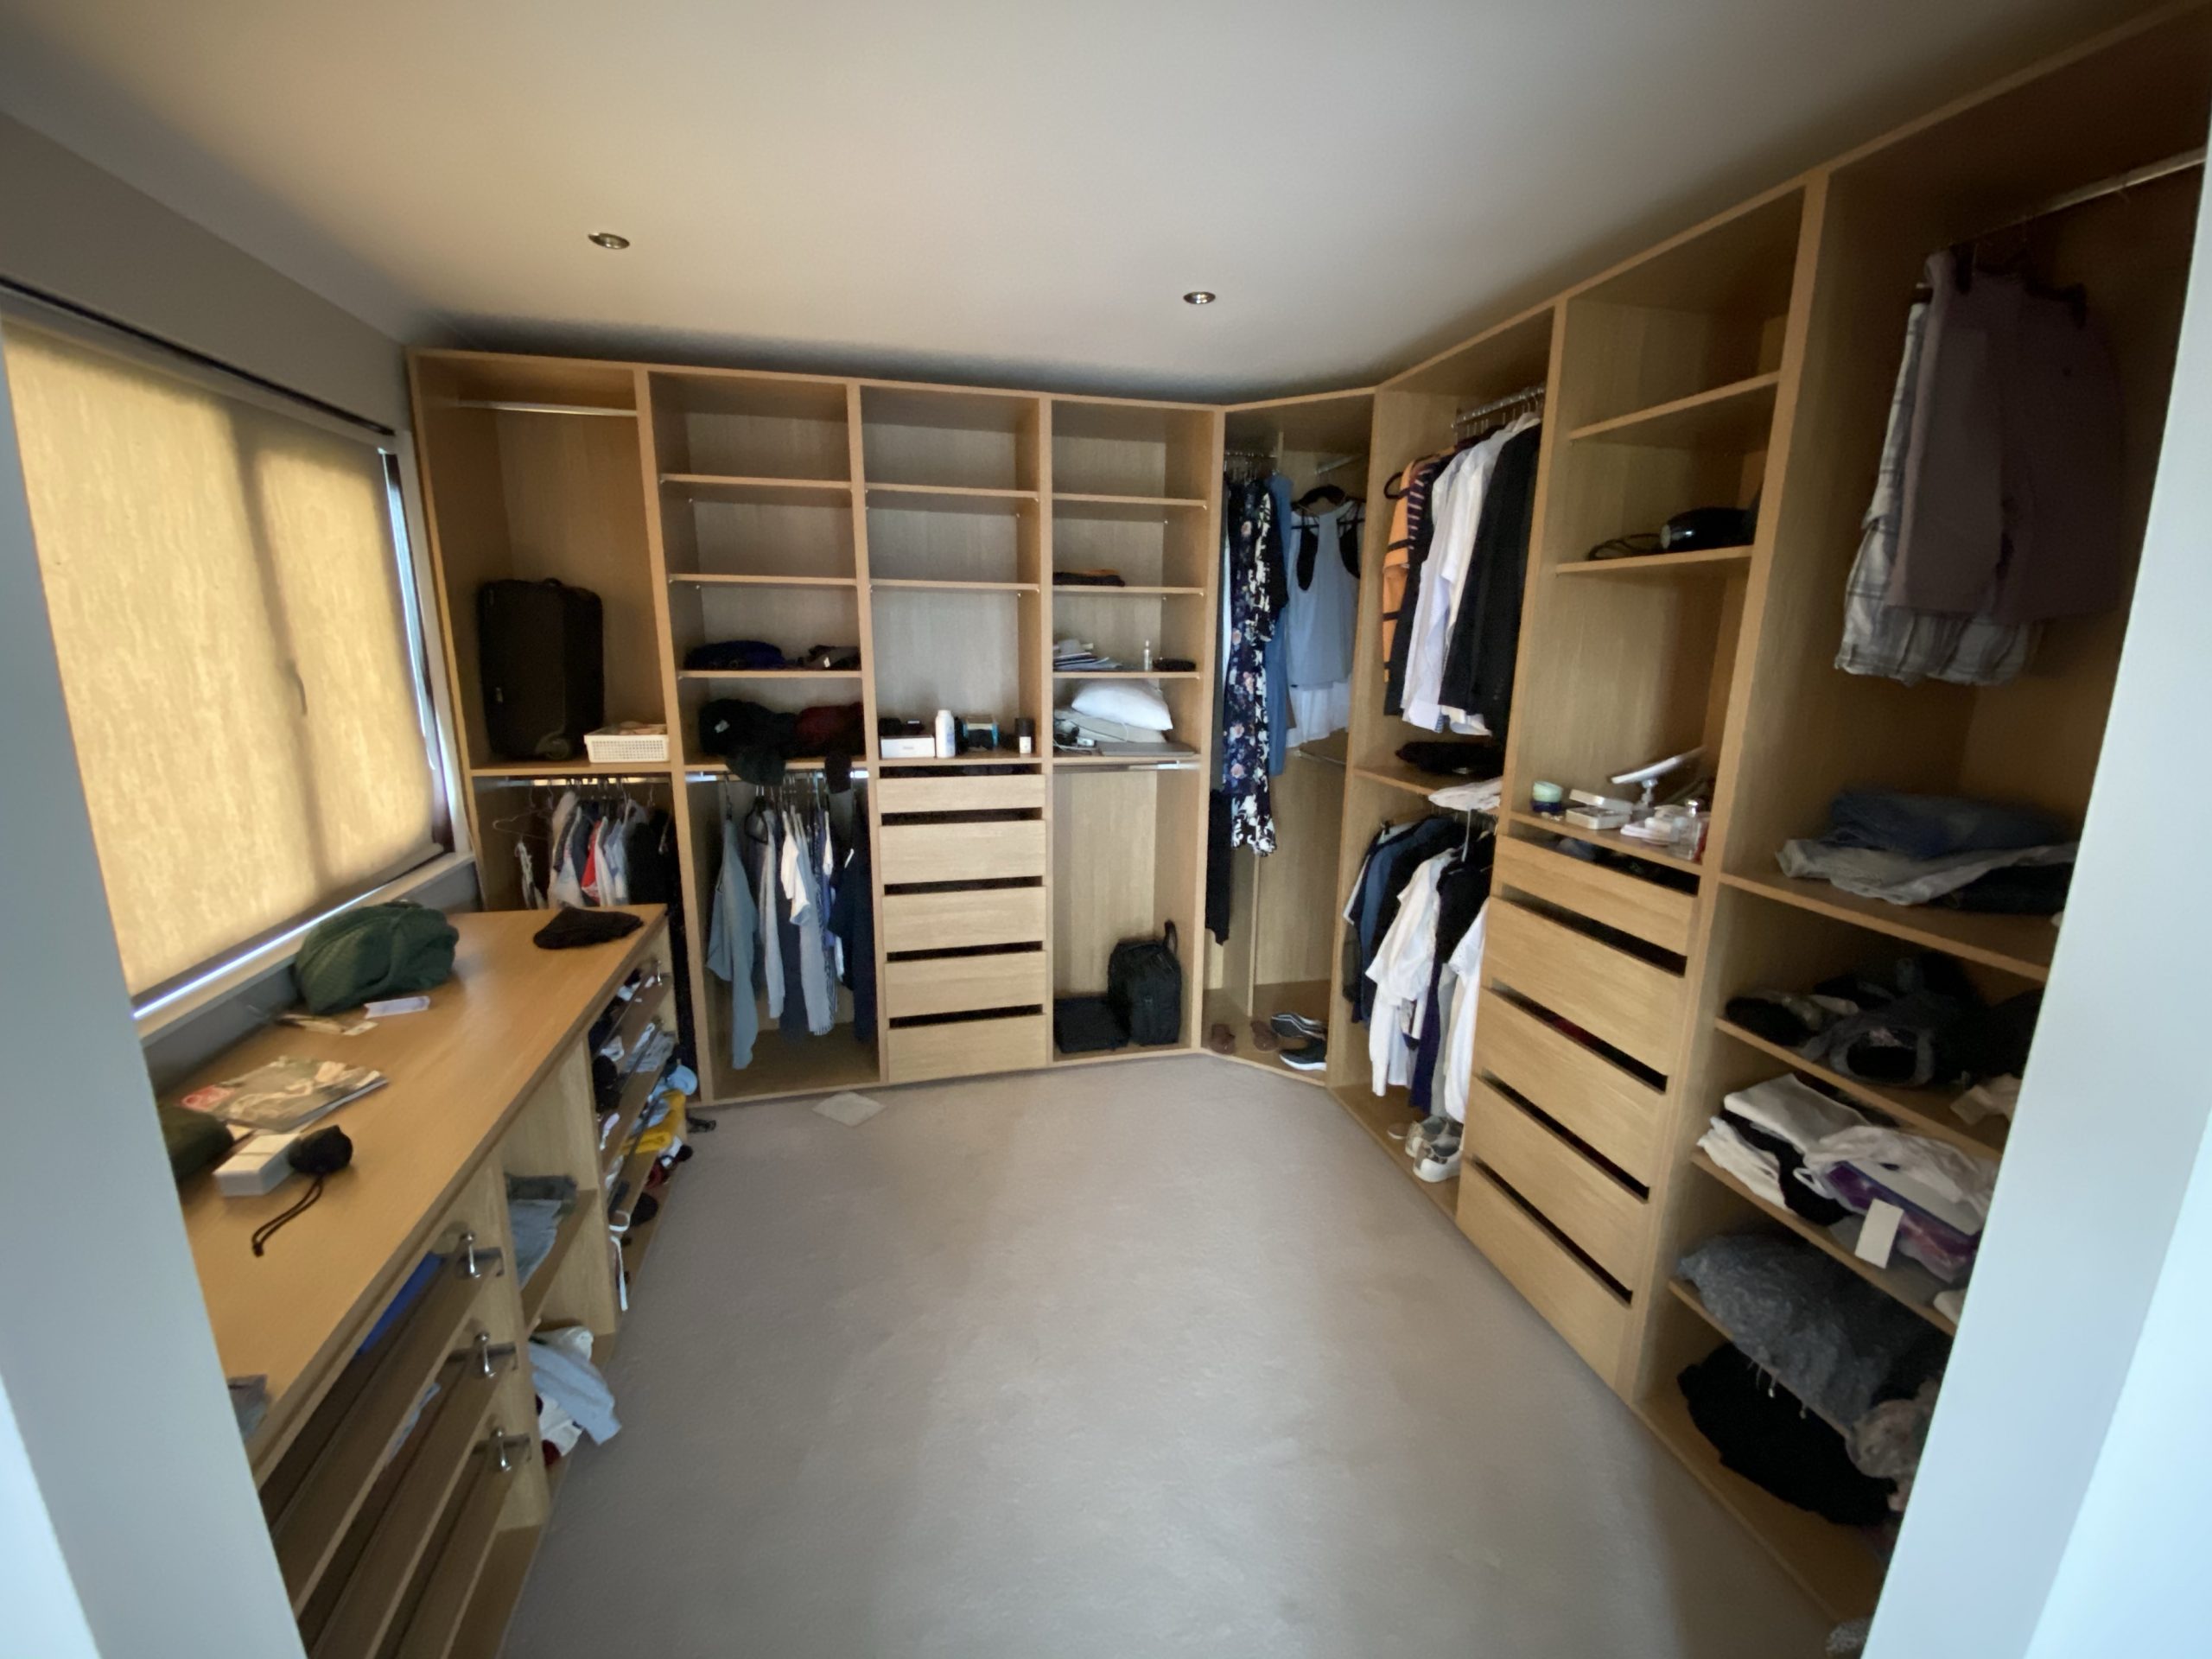 Bedroom Storage